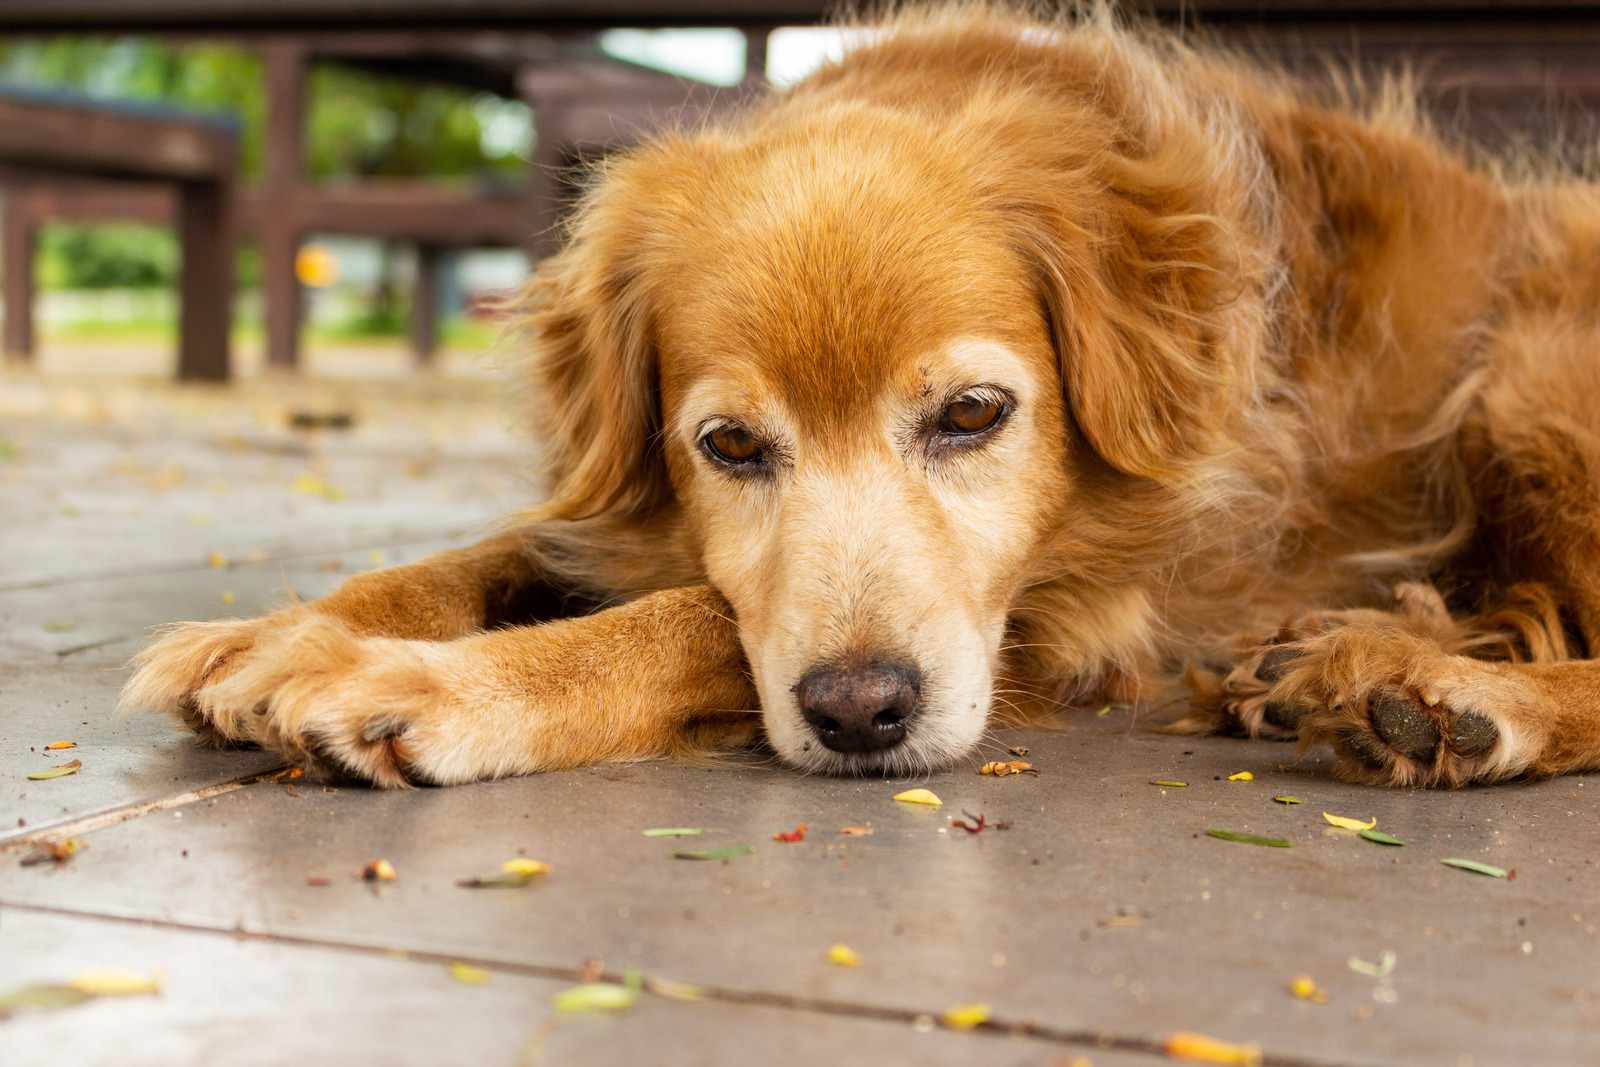 Amandelen die een hond beter niet mag eten|Bruine hond ligt ziek op de grond na eten van amandelen